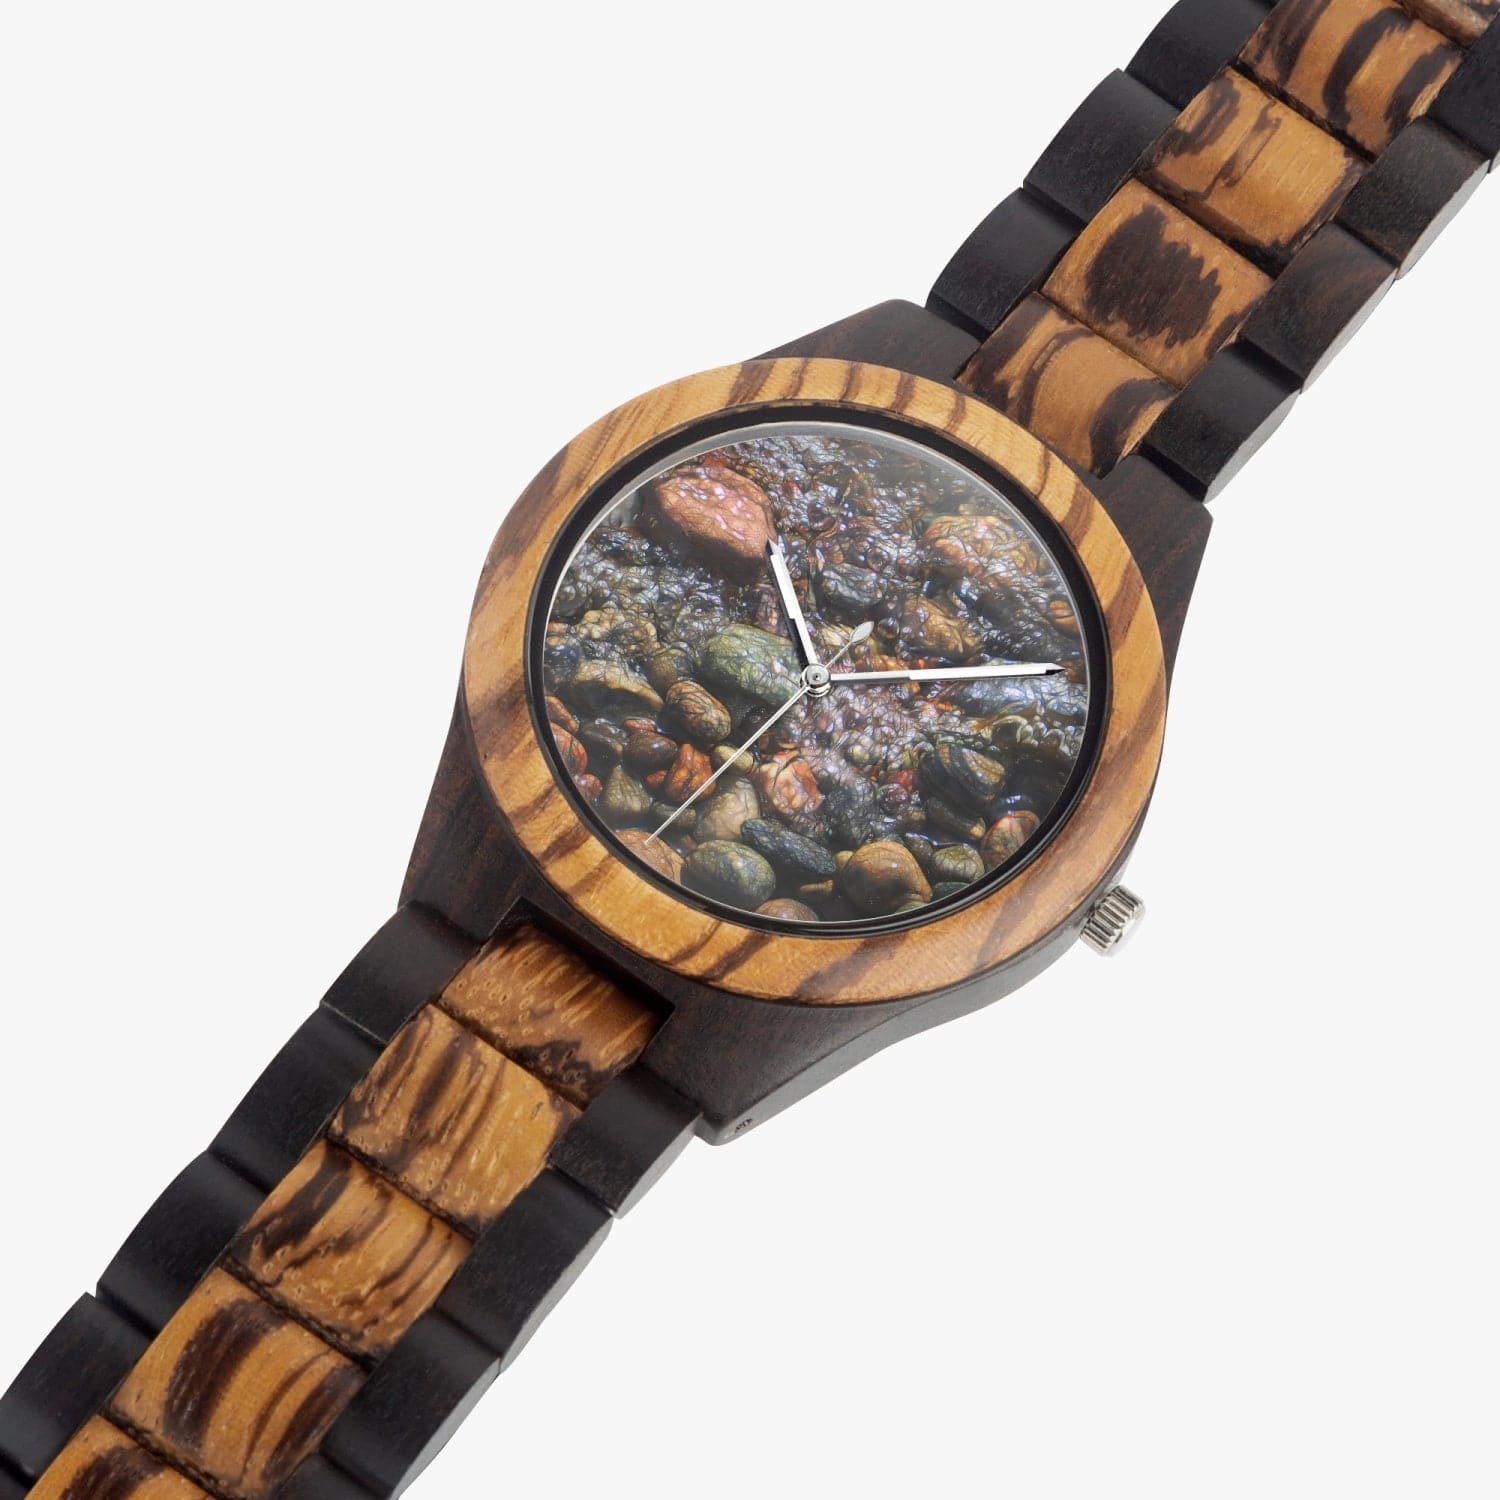 Wet cobble stones.  Ebony Wooden Watch.  Designer watch by Ingrid Hütten